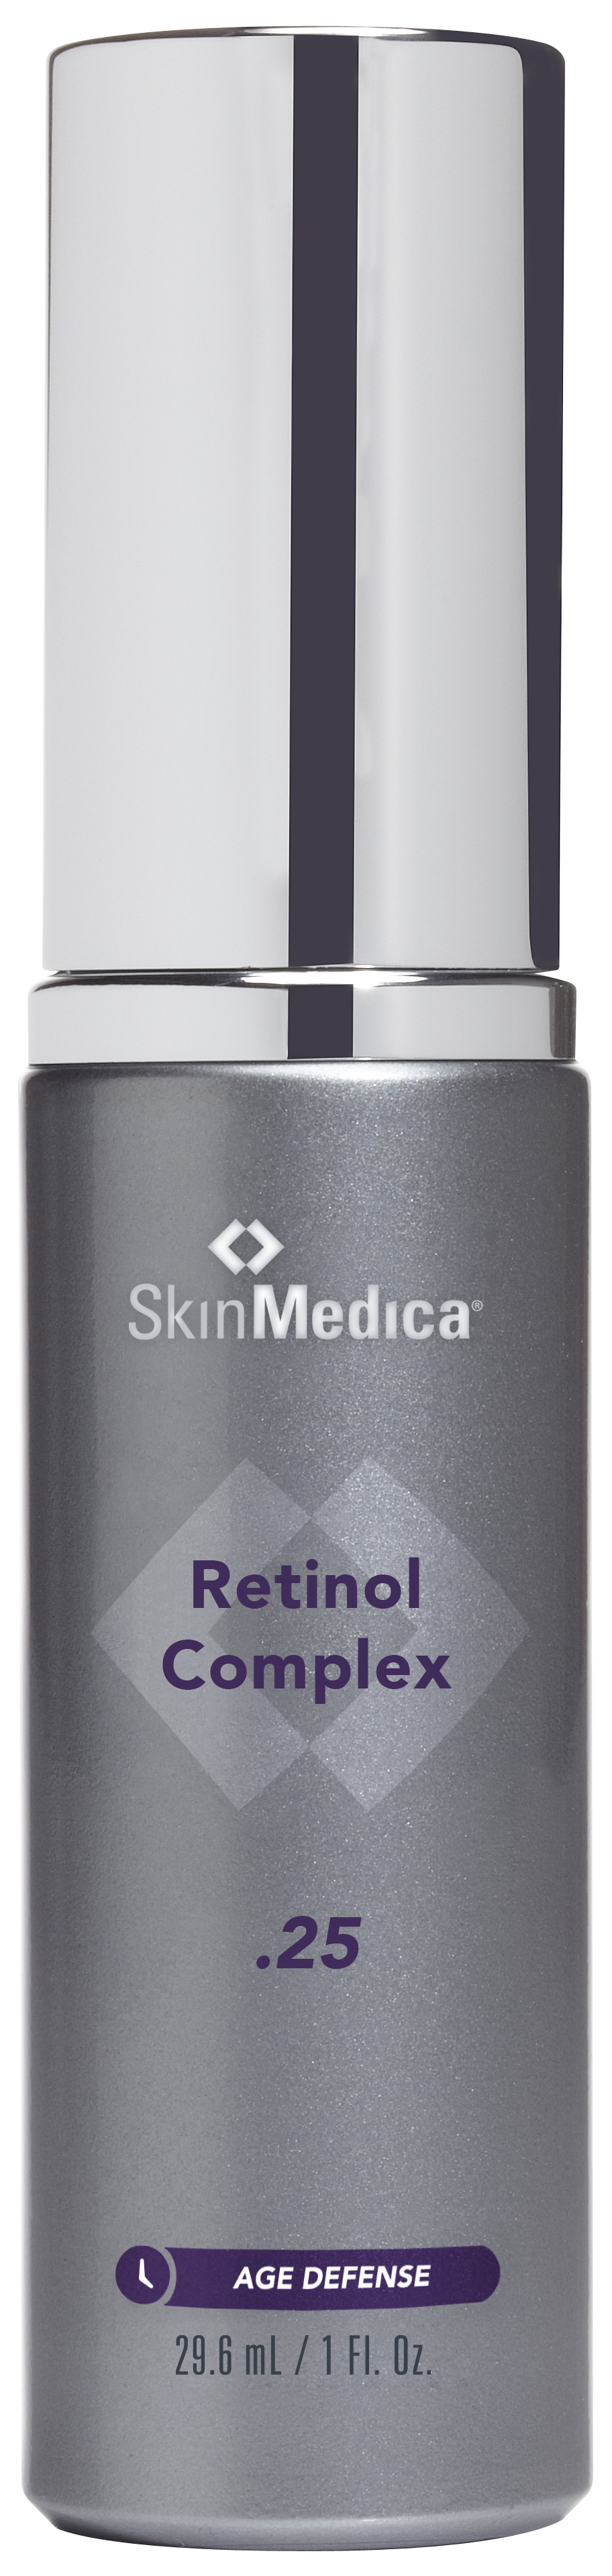 New skinmedica retinol complex age defense 0.5 1 oz